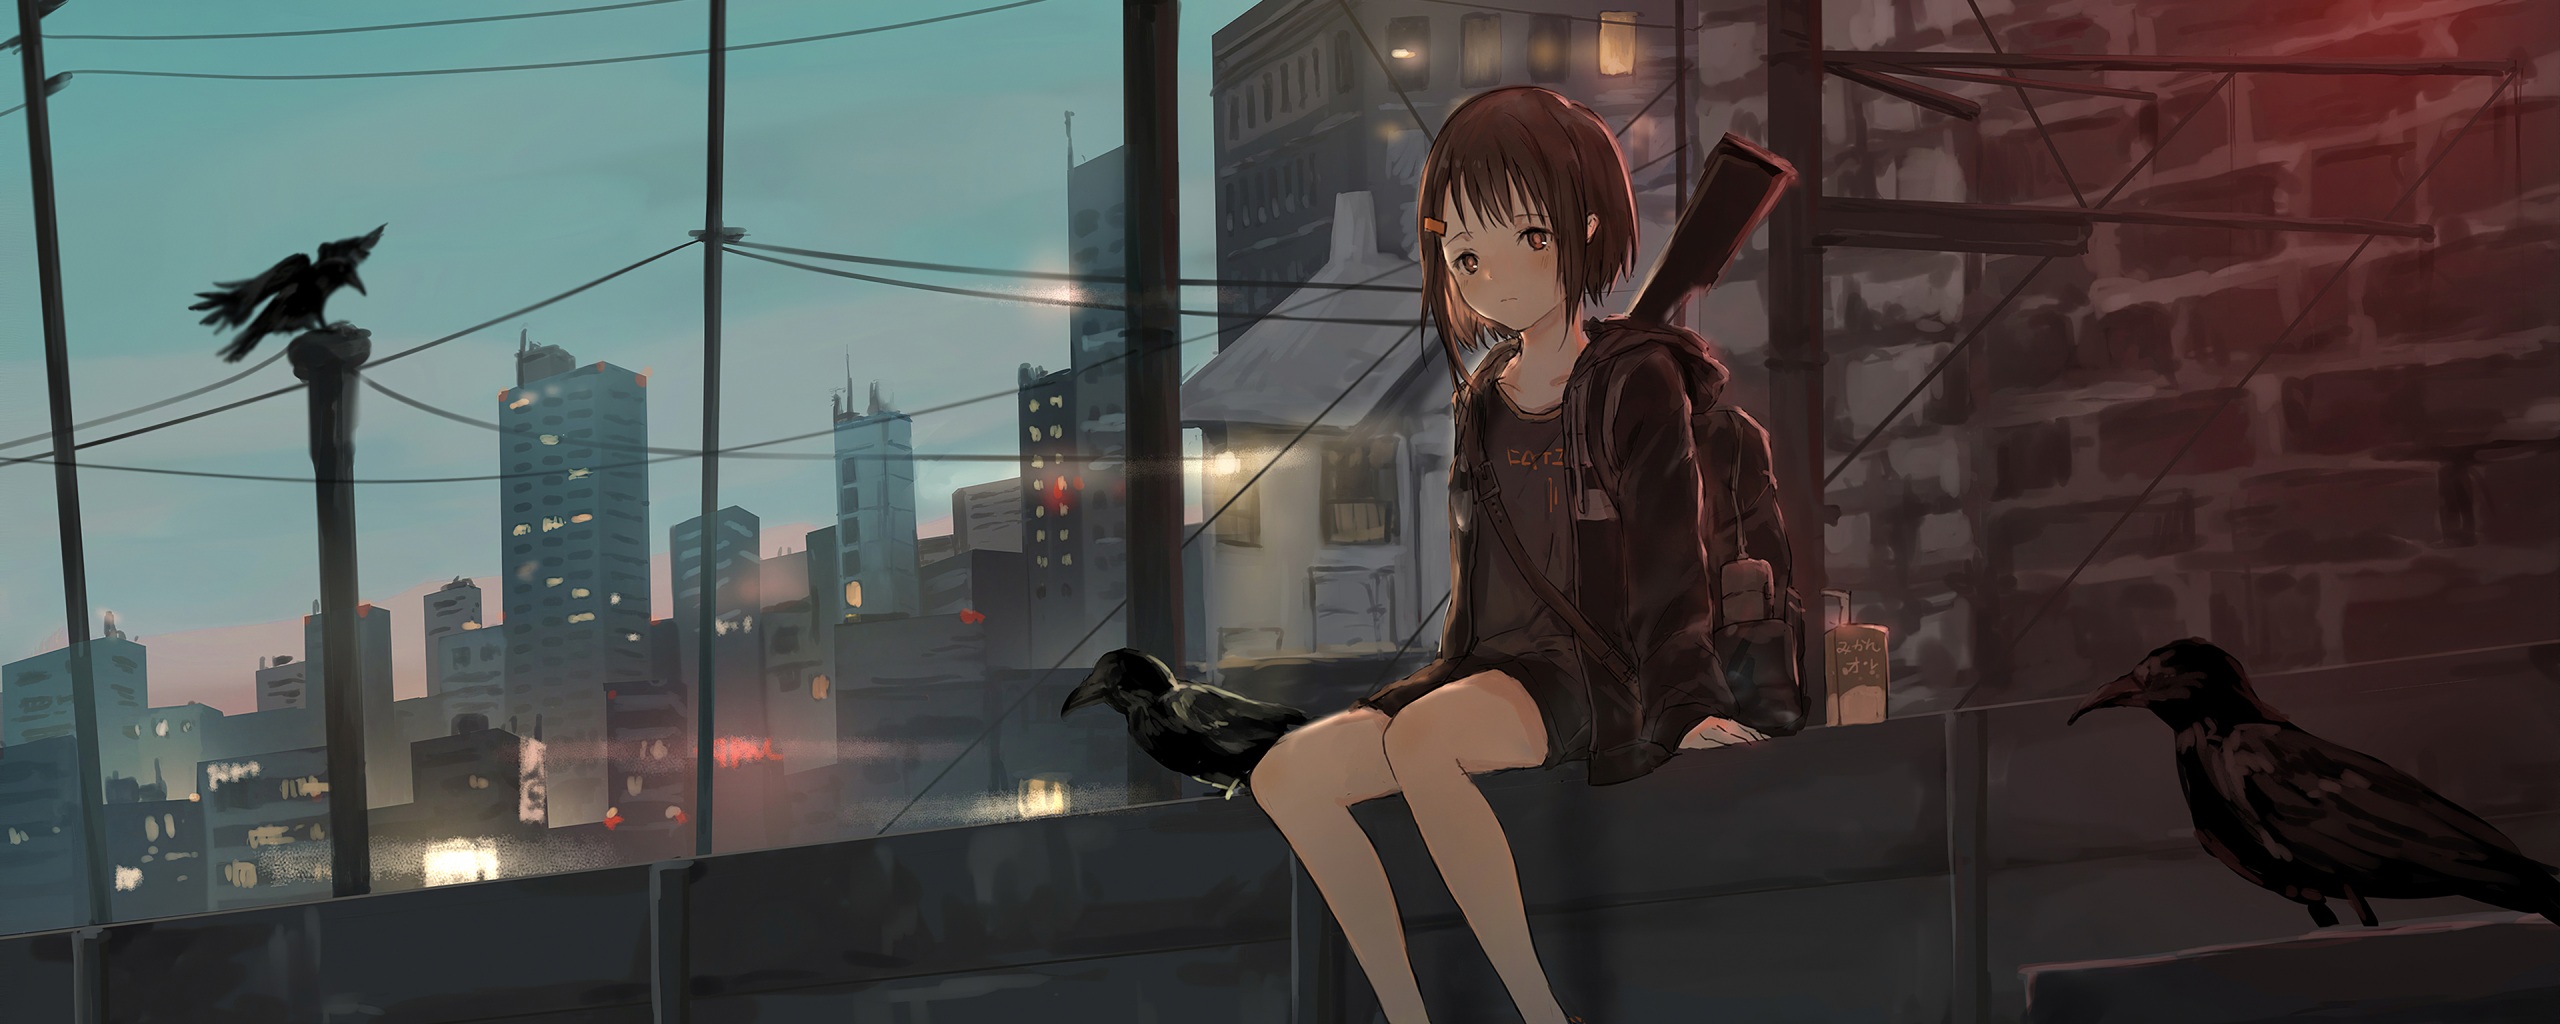 Wallpaper 4k Anime Girl Sitting Alone Roof Sad Wallpaper